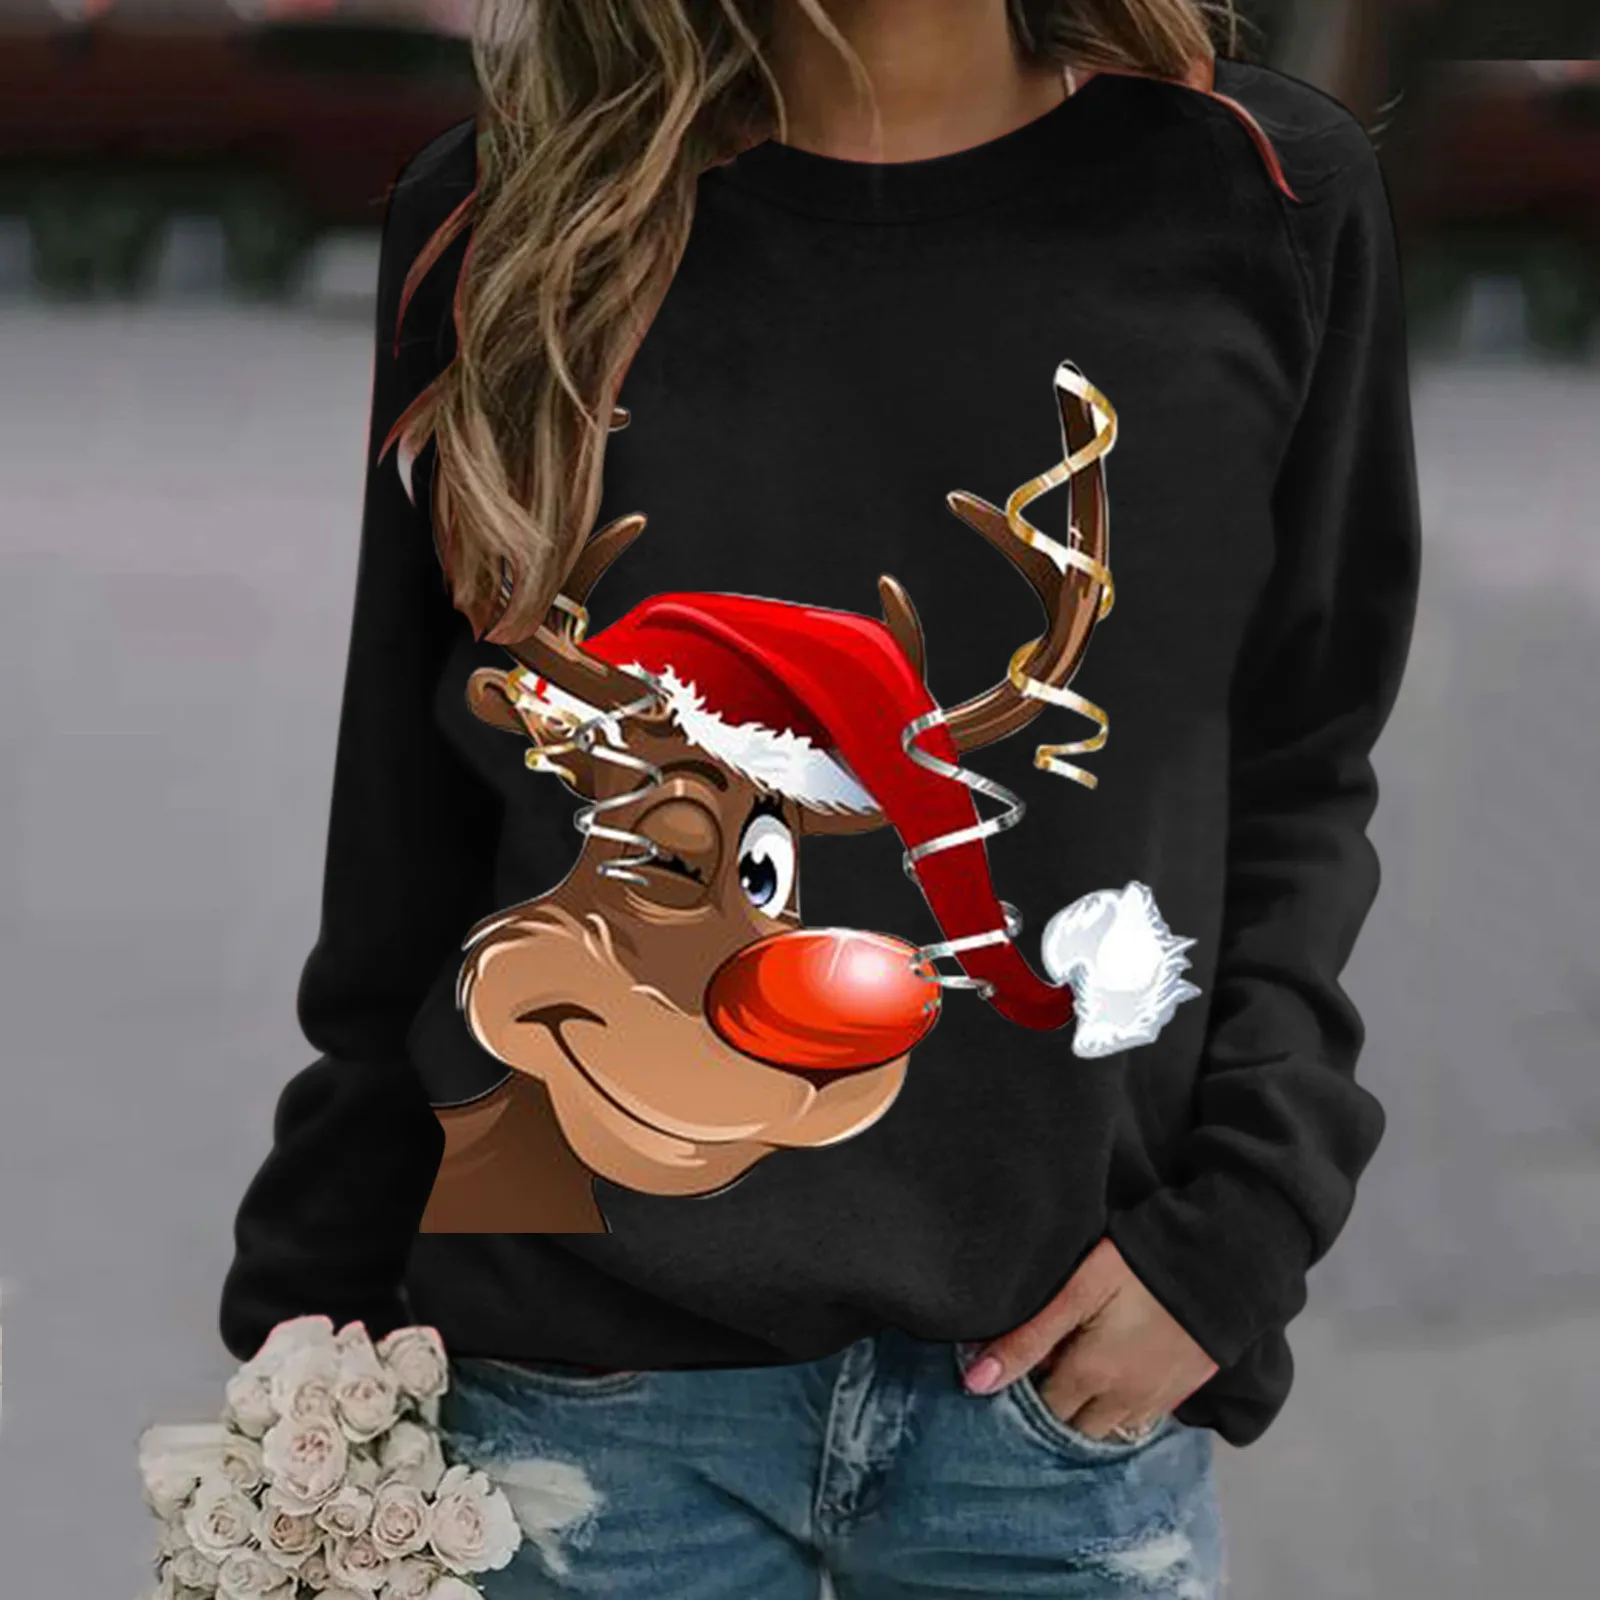 

Casual Hoodies Pullover Solid Oversize Long Sleeve Tank Tops FemaleStreetwear Christmas Women'S Sweatshirt Deer Printed Top